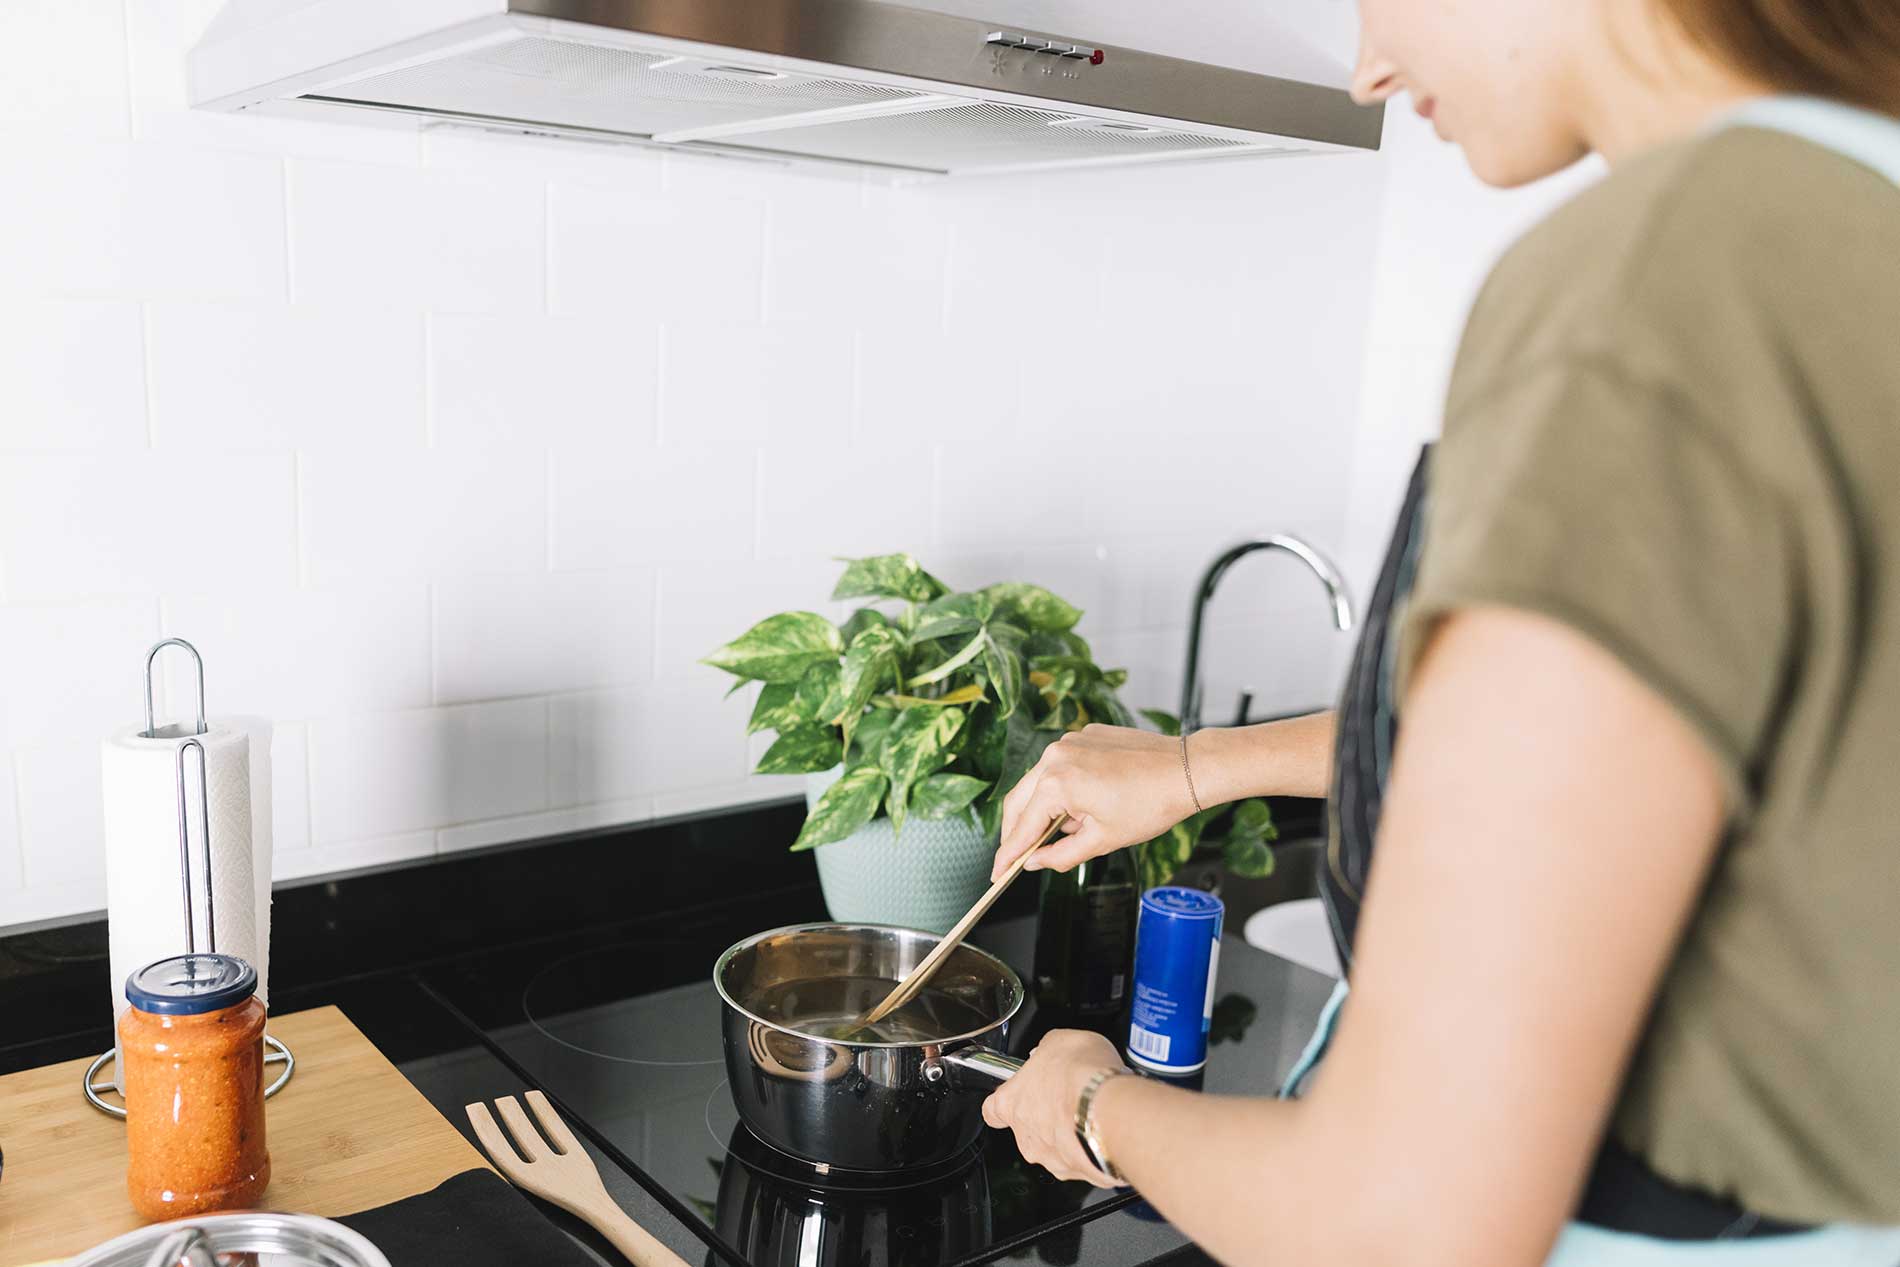 Donna che cucina - Come eliminare gli odori in cucina